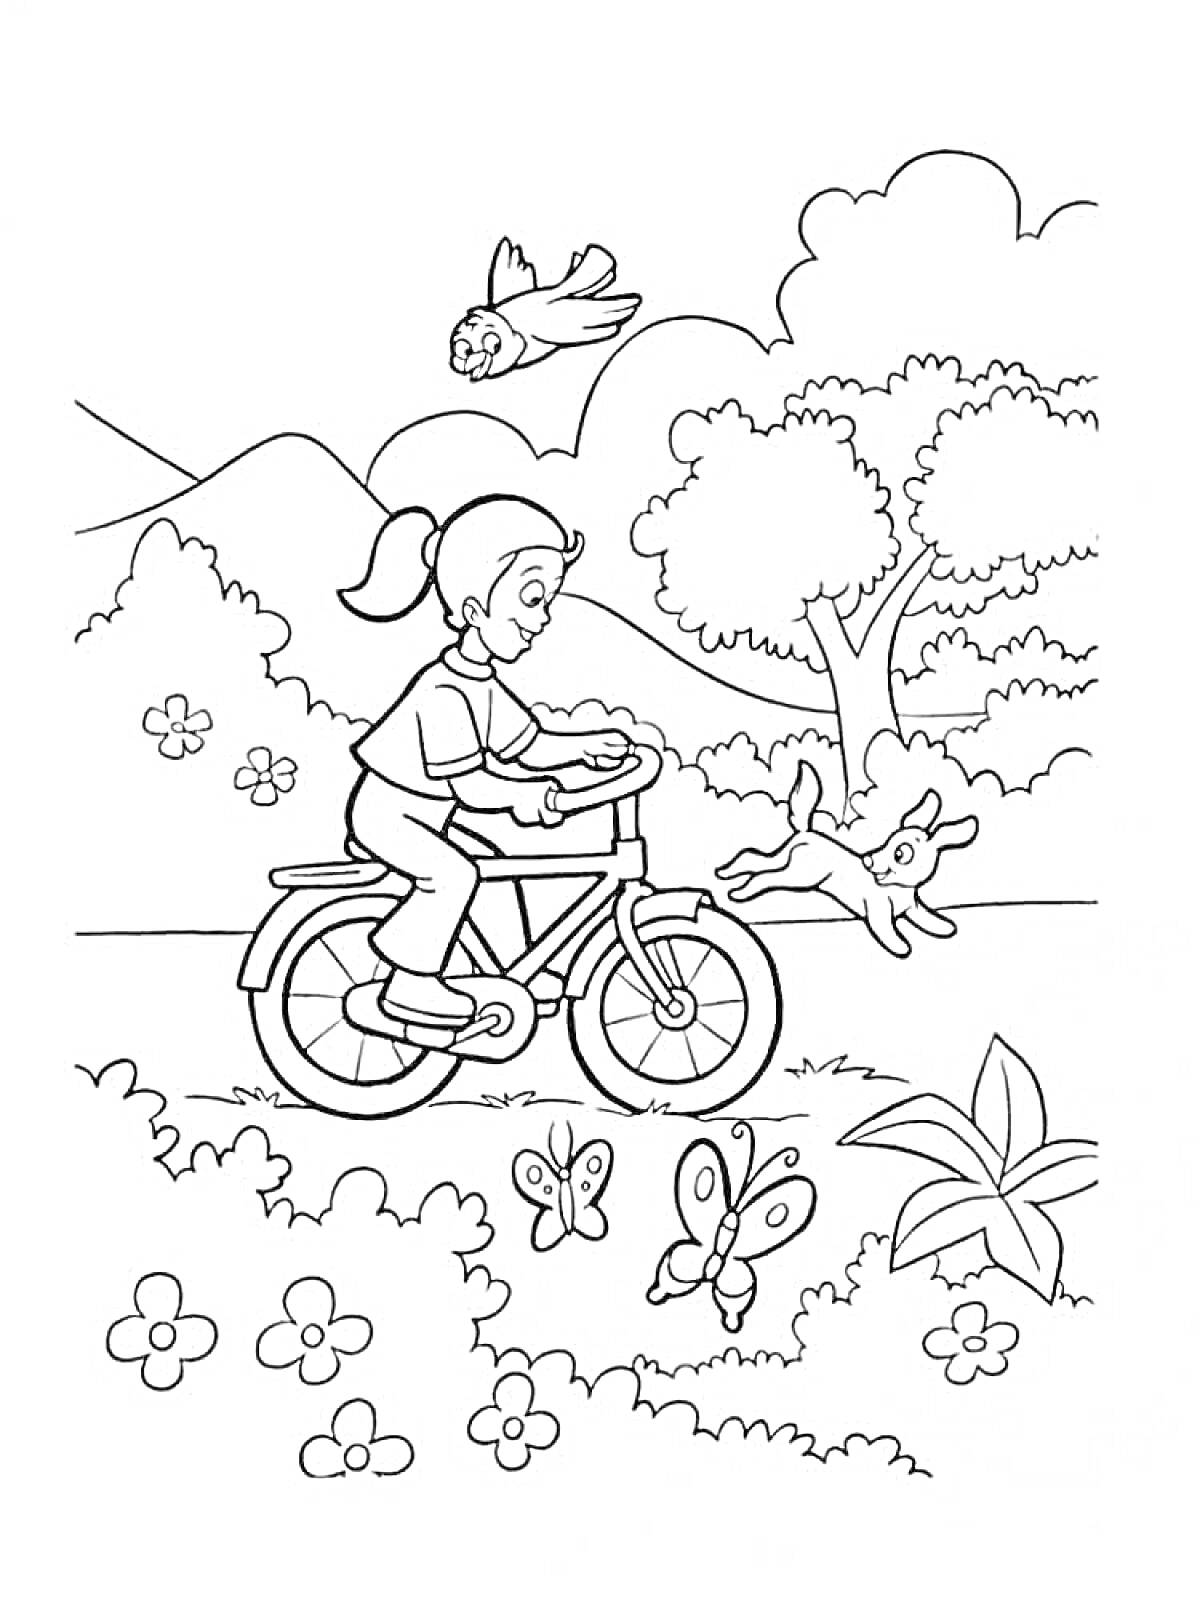 Девочка едет на велосипеде в парке с деревьями, цветами, бабочками, собакой и птицей.